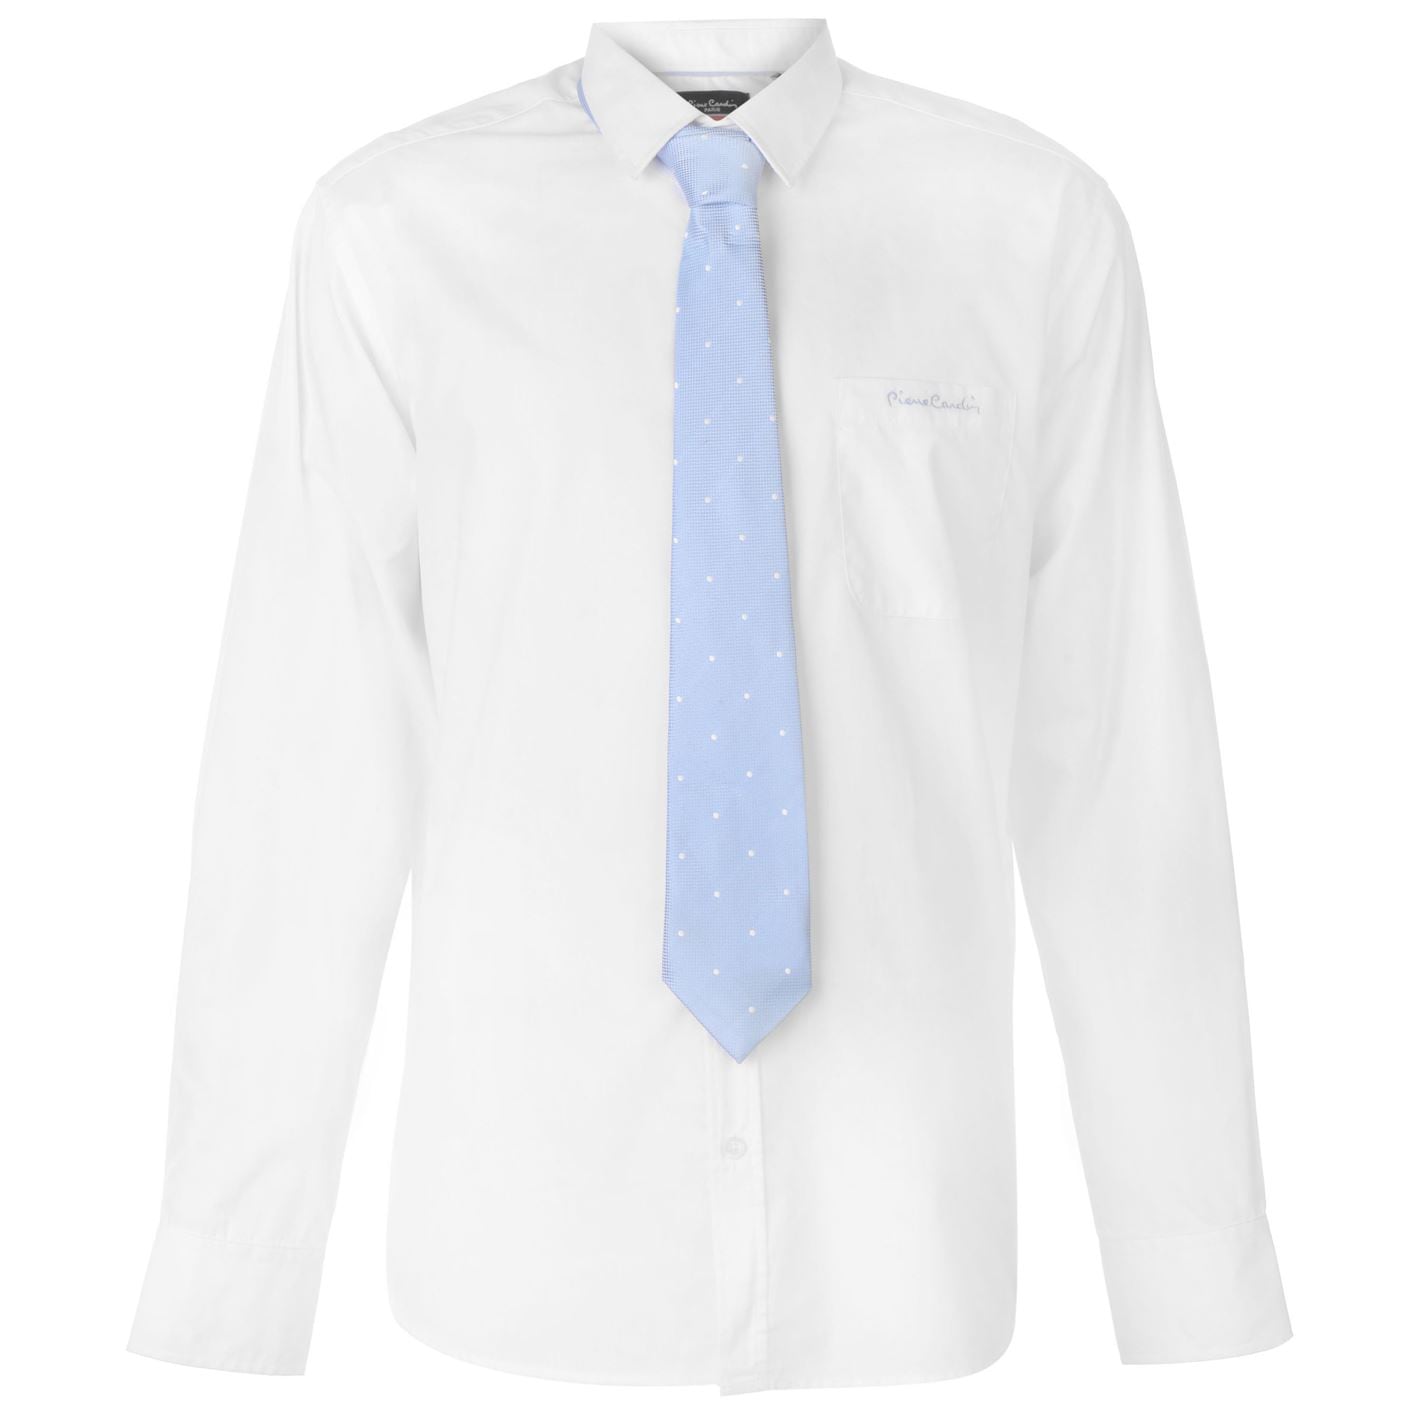 pánská košile s kravatou PIERRE CARDIN - WHT/BLUE PLAIN